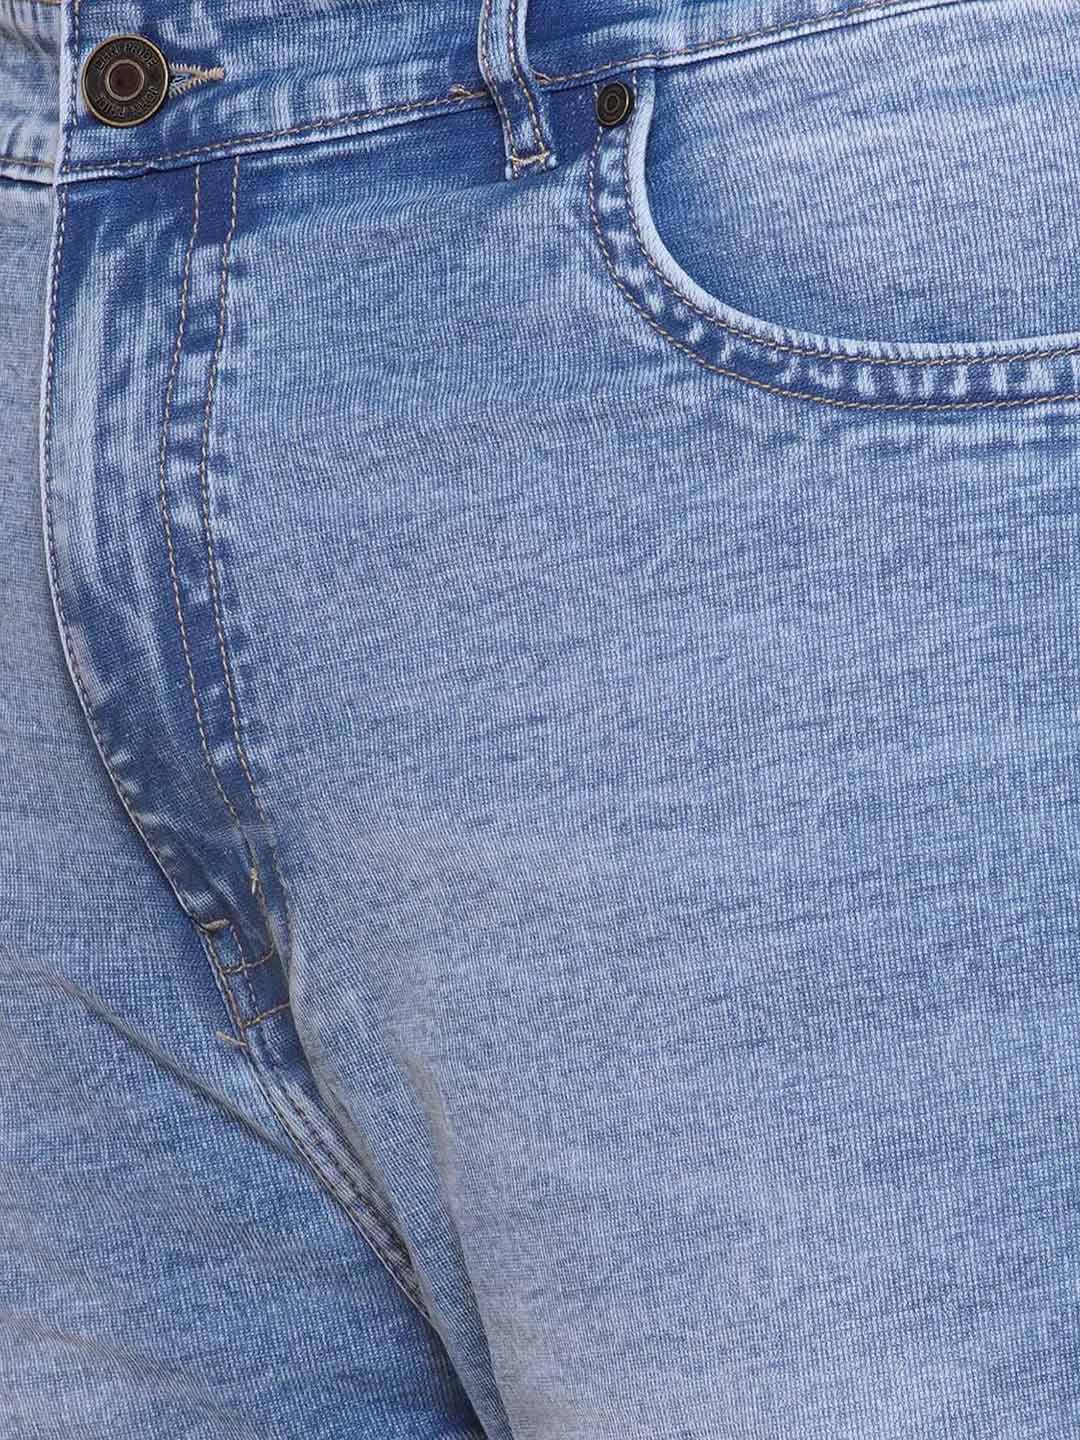 bottomwear/jeans/JPJ27101/jpj27101-2.jpg